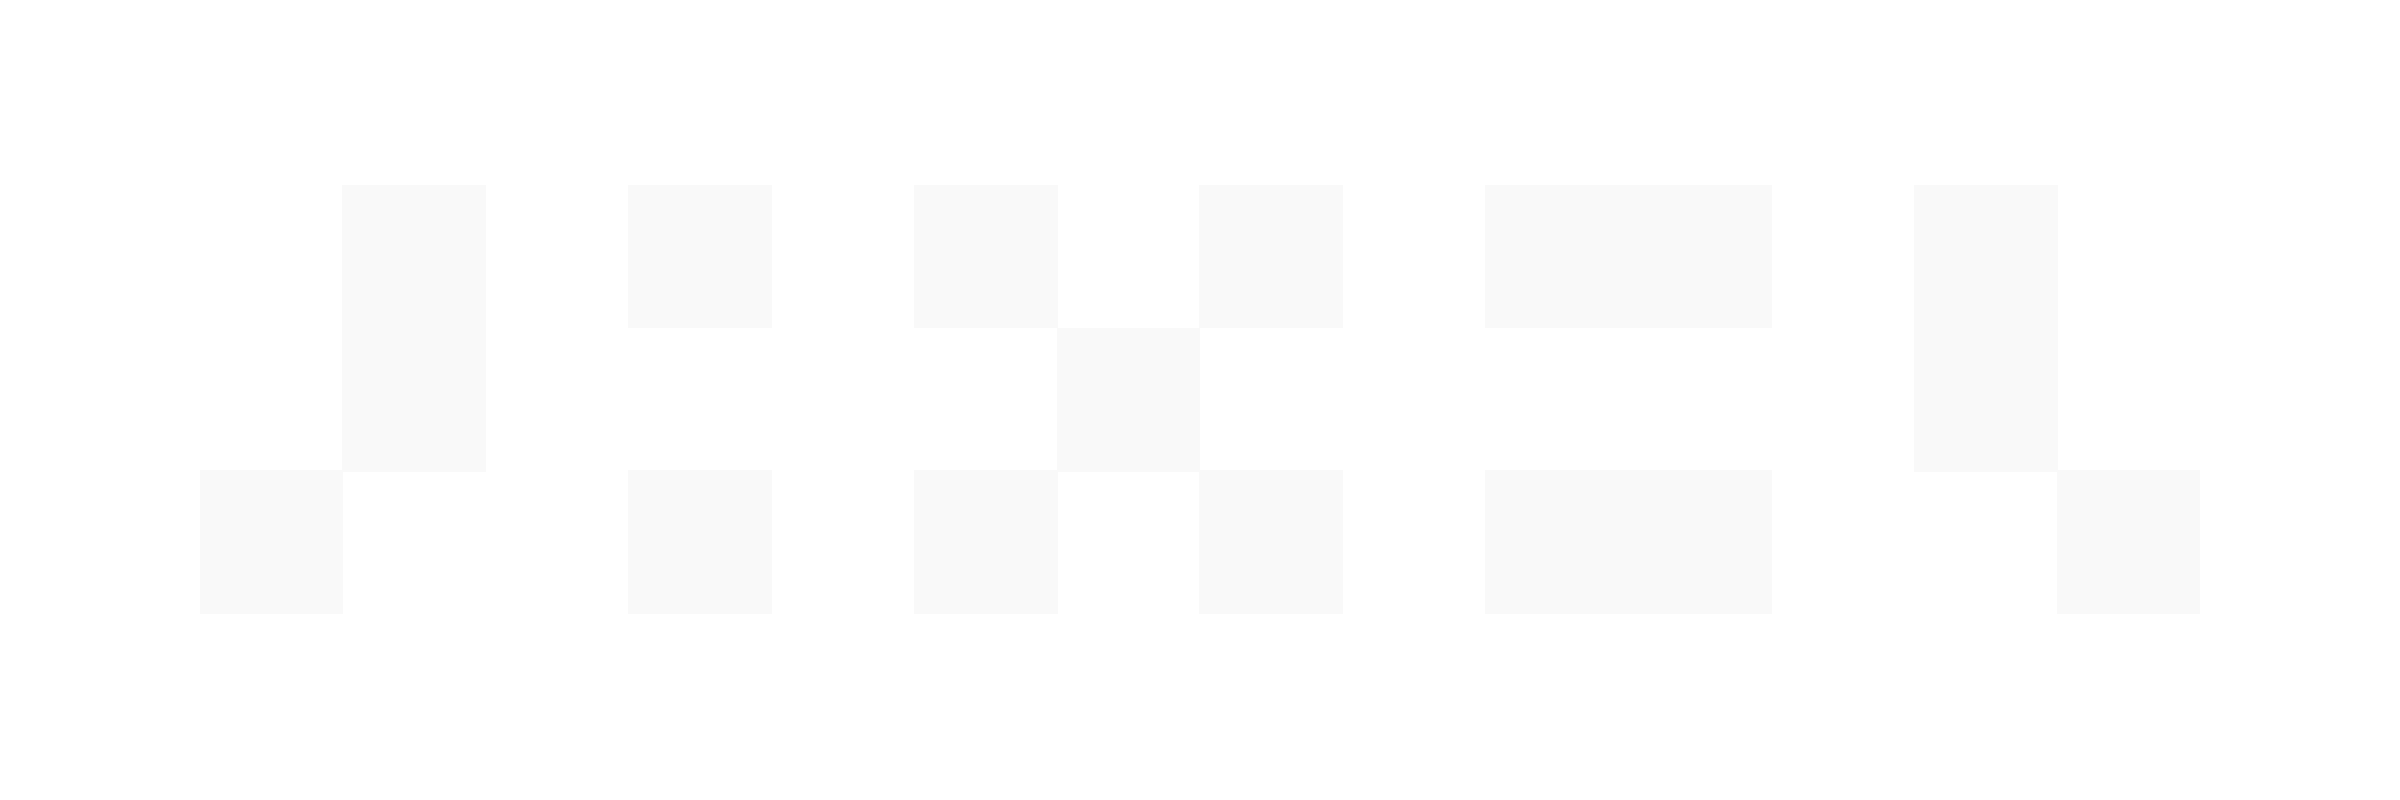 pixel_logo_2020